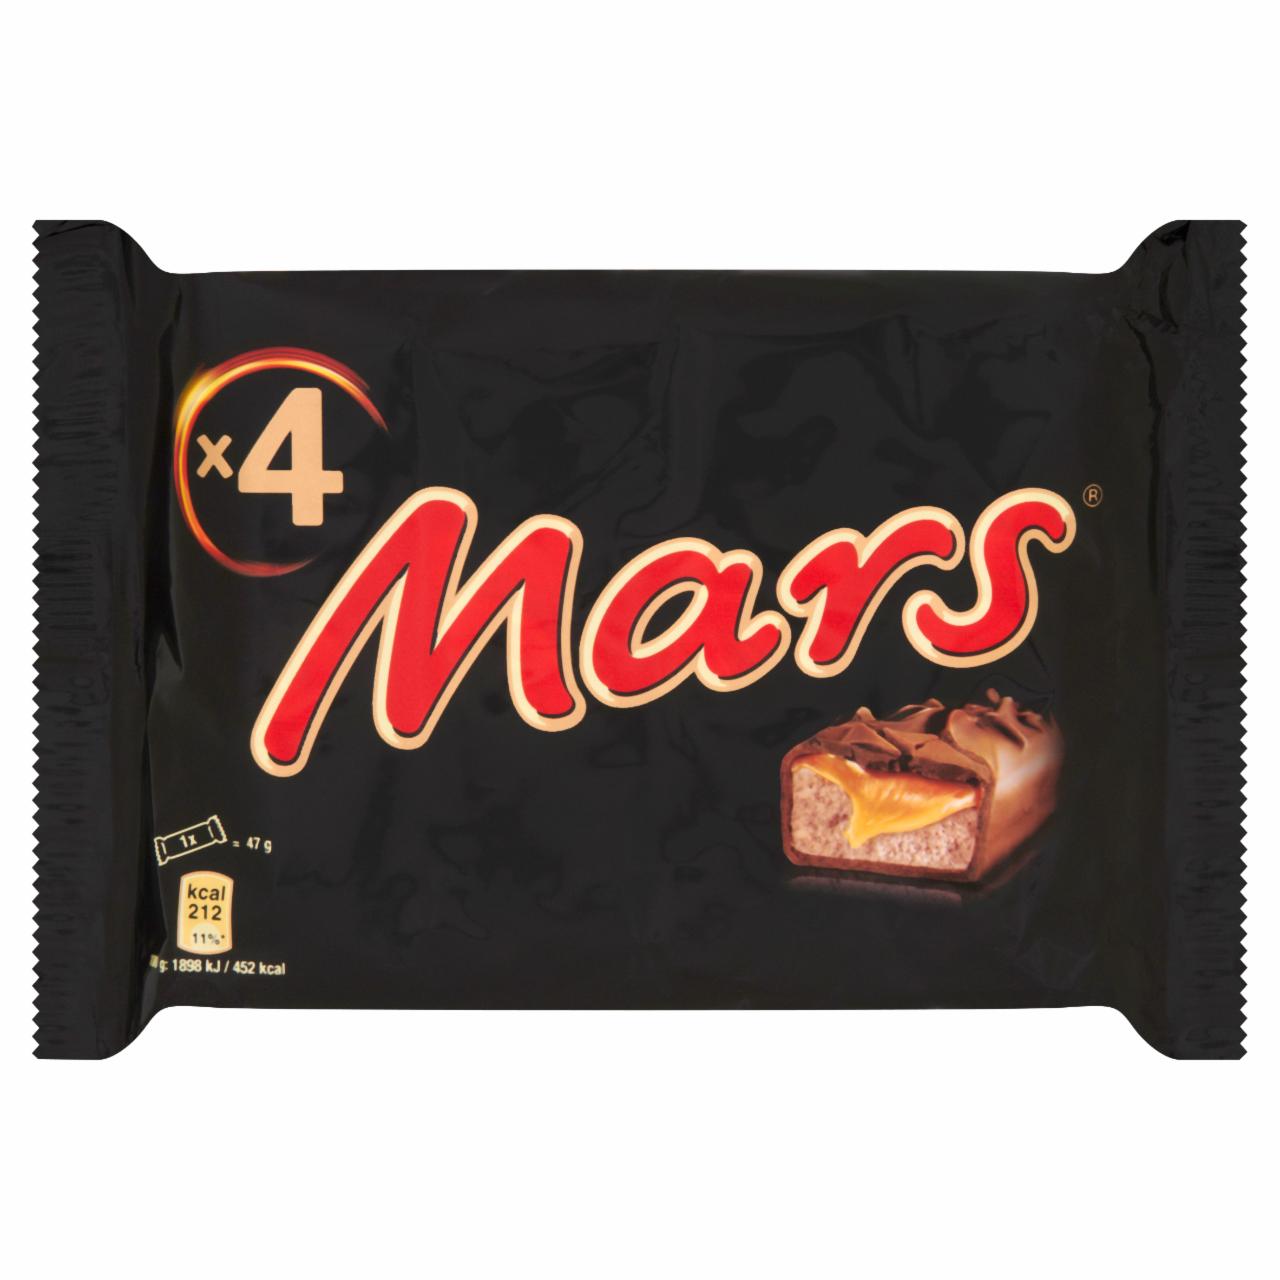 Zdjęcia - Mars Baton z nugatowym nadzieniem oblany karmelem i czekoladą 188 g (4 sztuki)